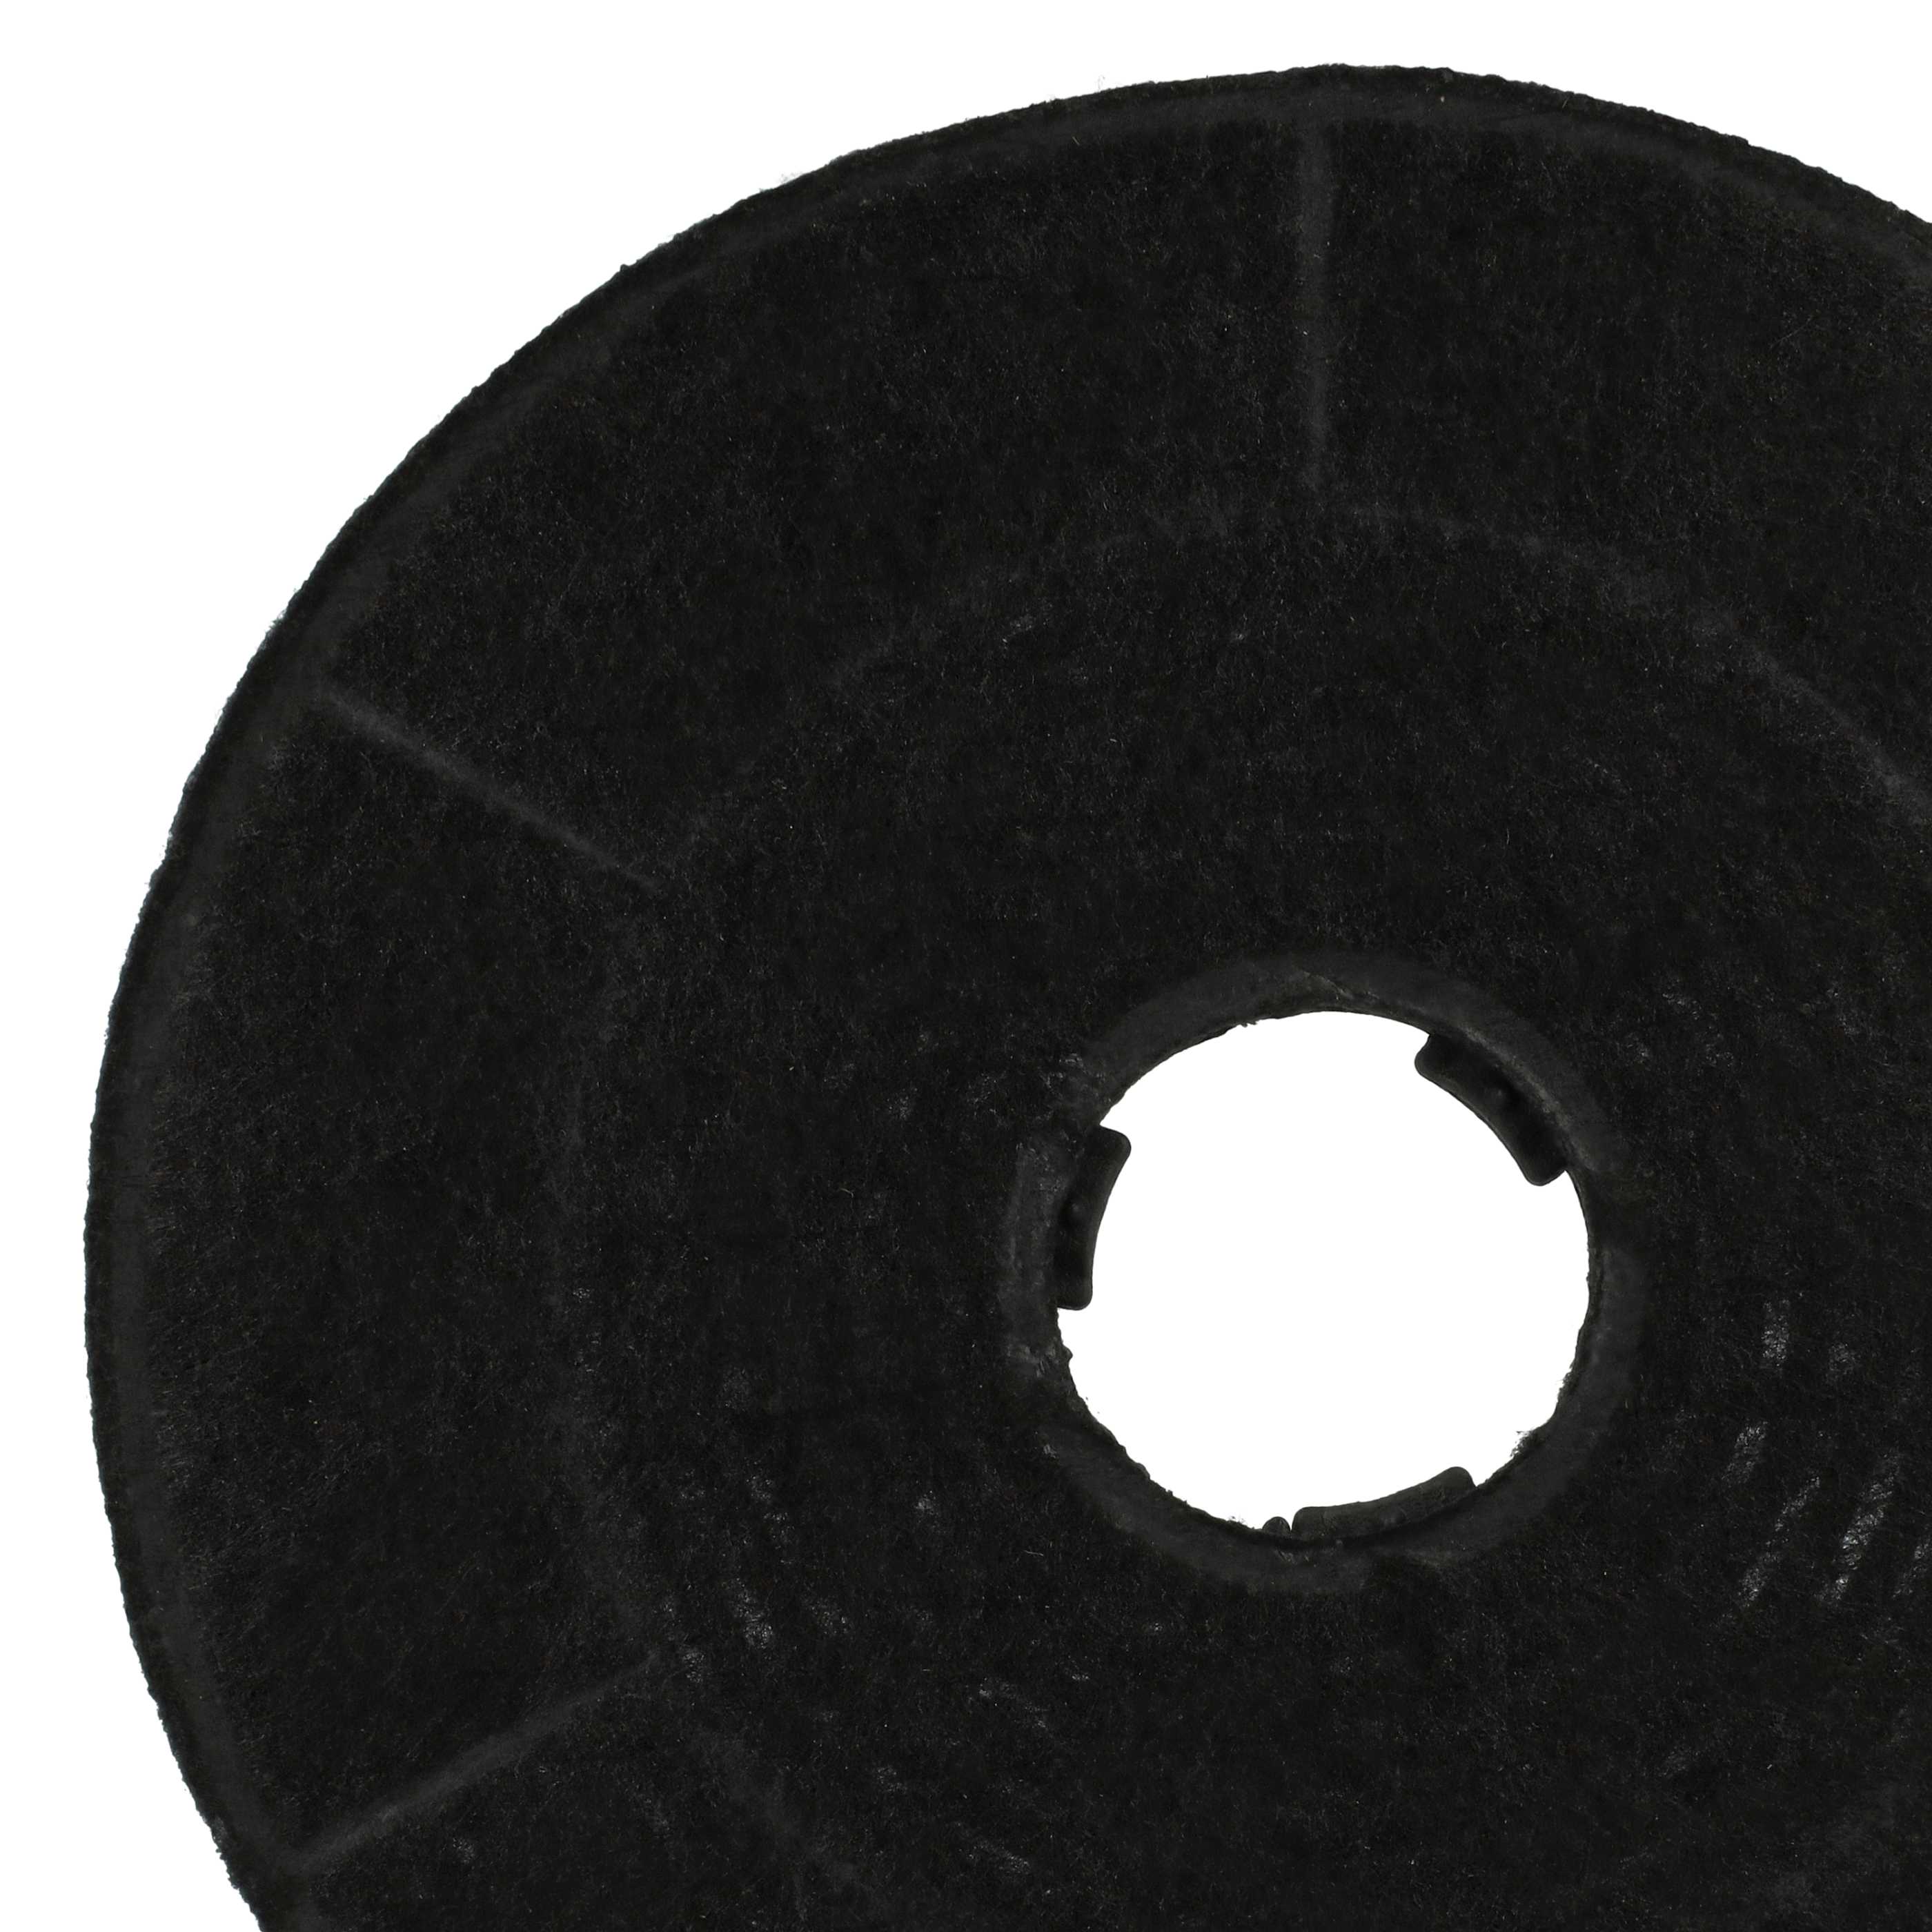 Filtr węglowy do okapu Bosch zamiennik Amica KF 17146 - 16 cm